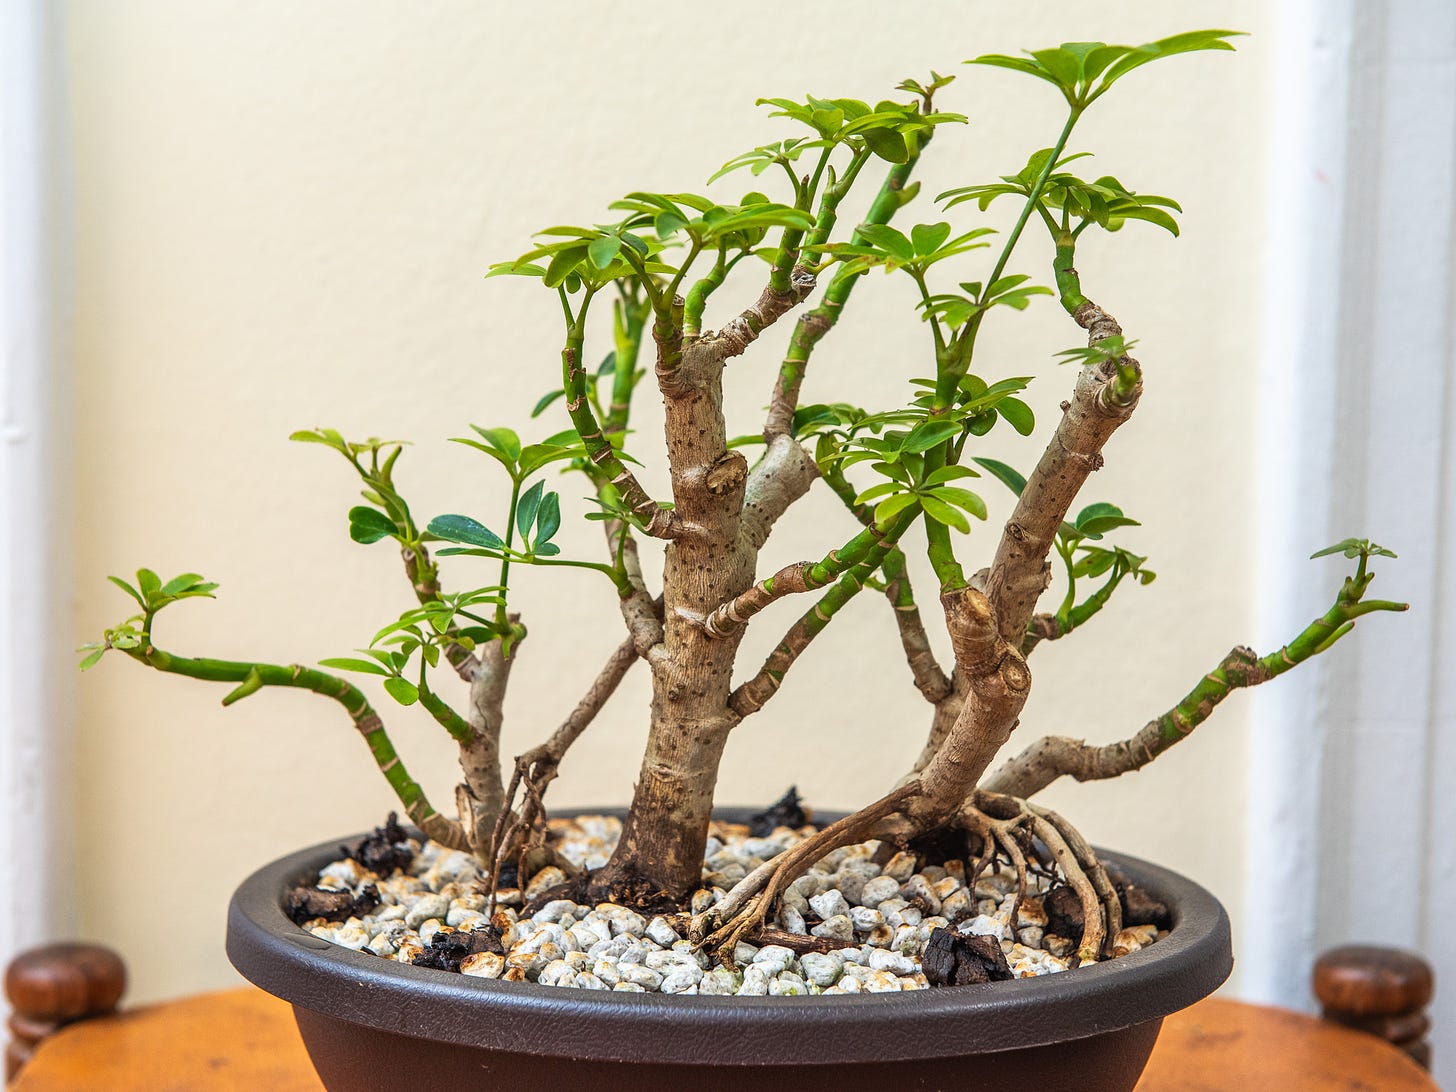 ID: Umbrella tree bonsai